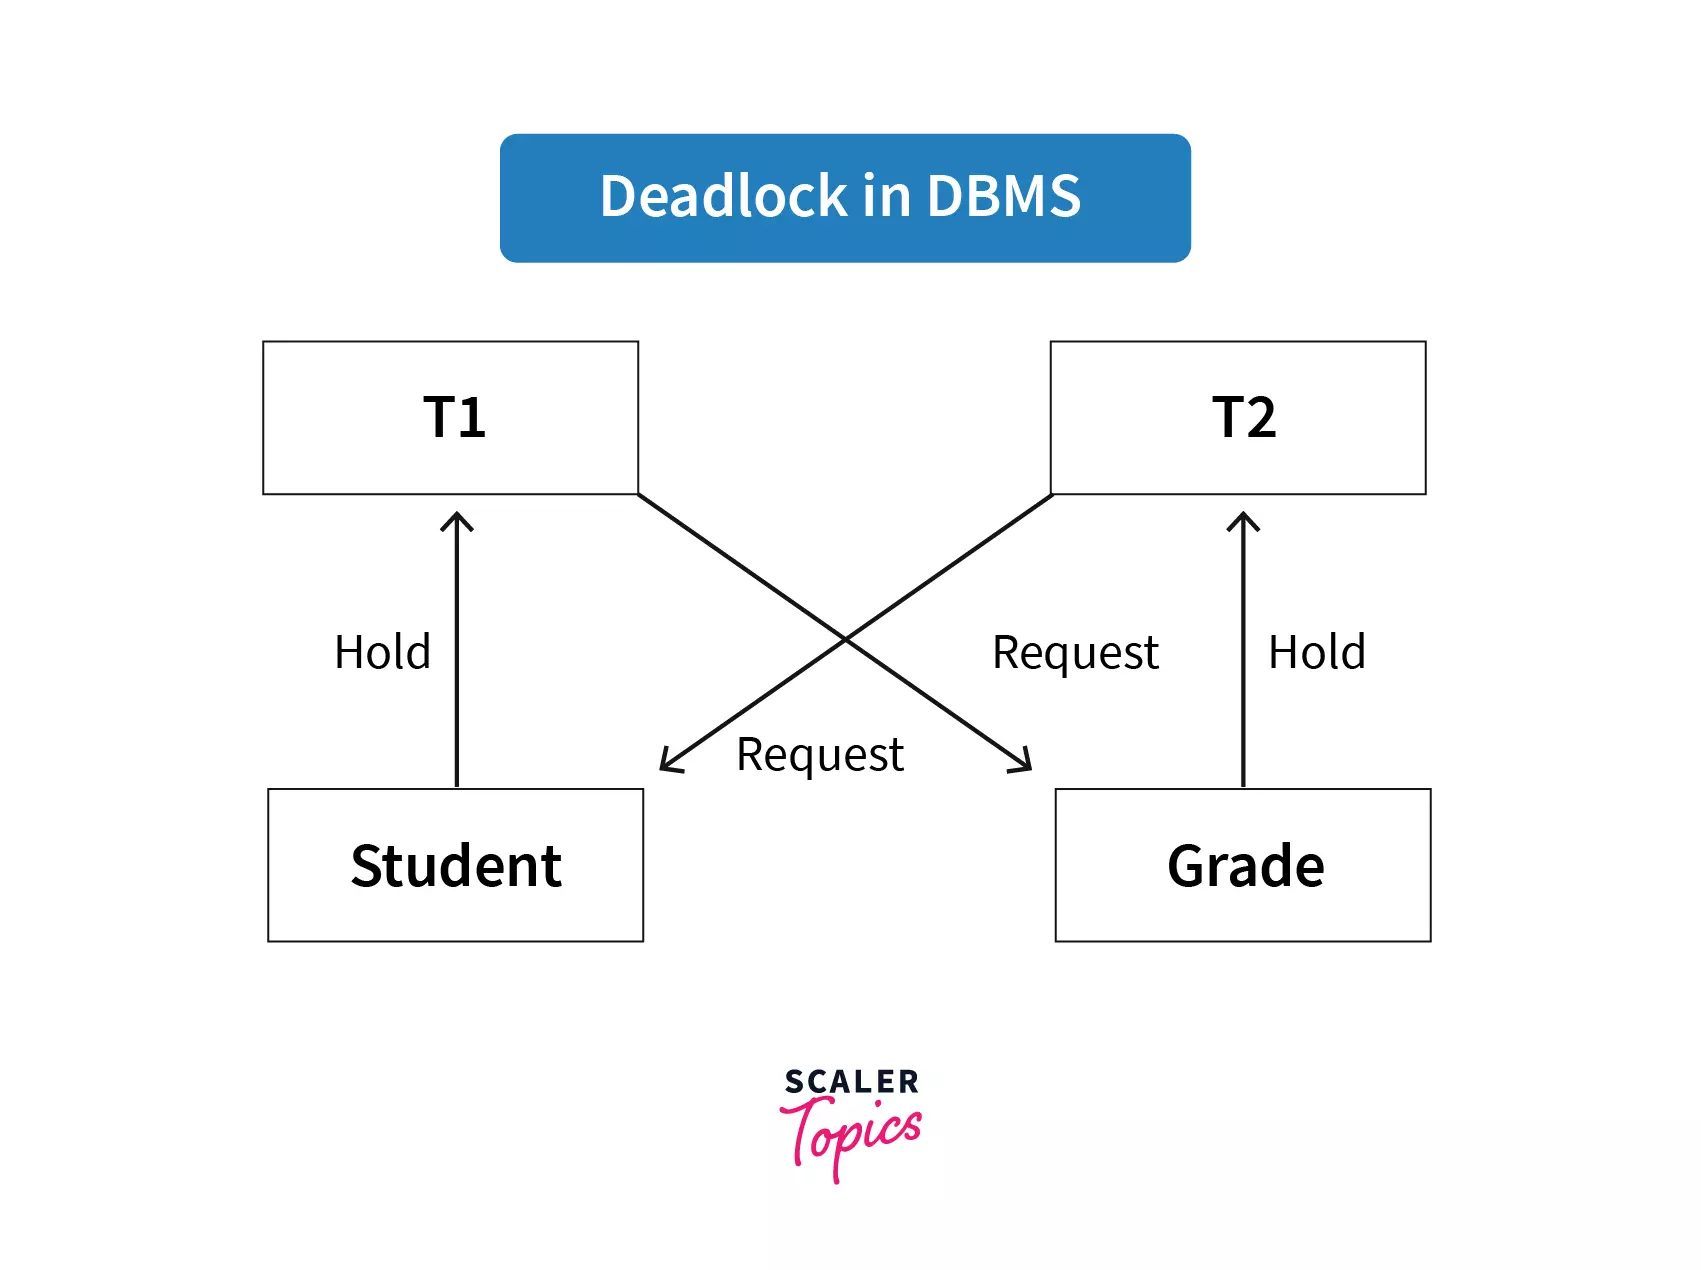 deadlock handling in dbms